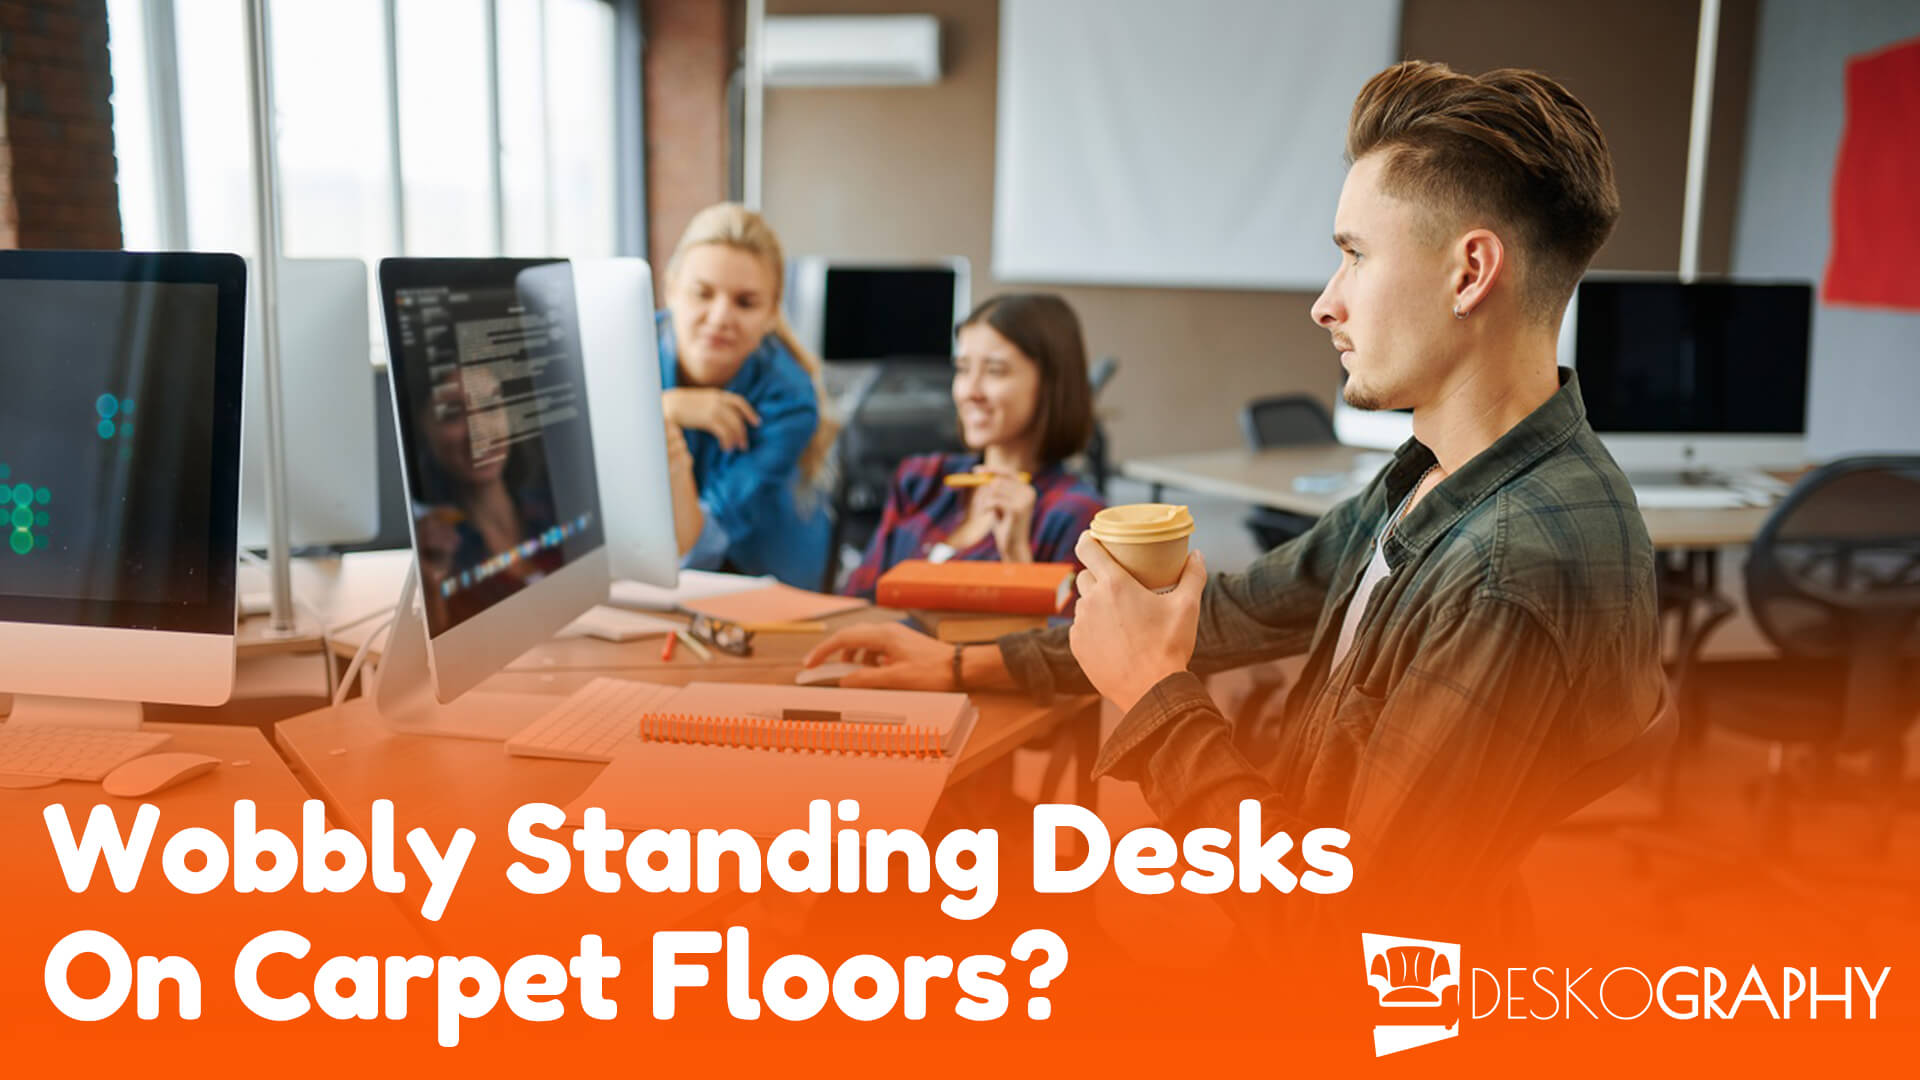 Wobbly Standing Desks On Carpet Floors?